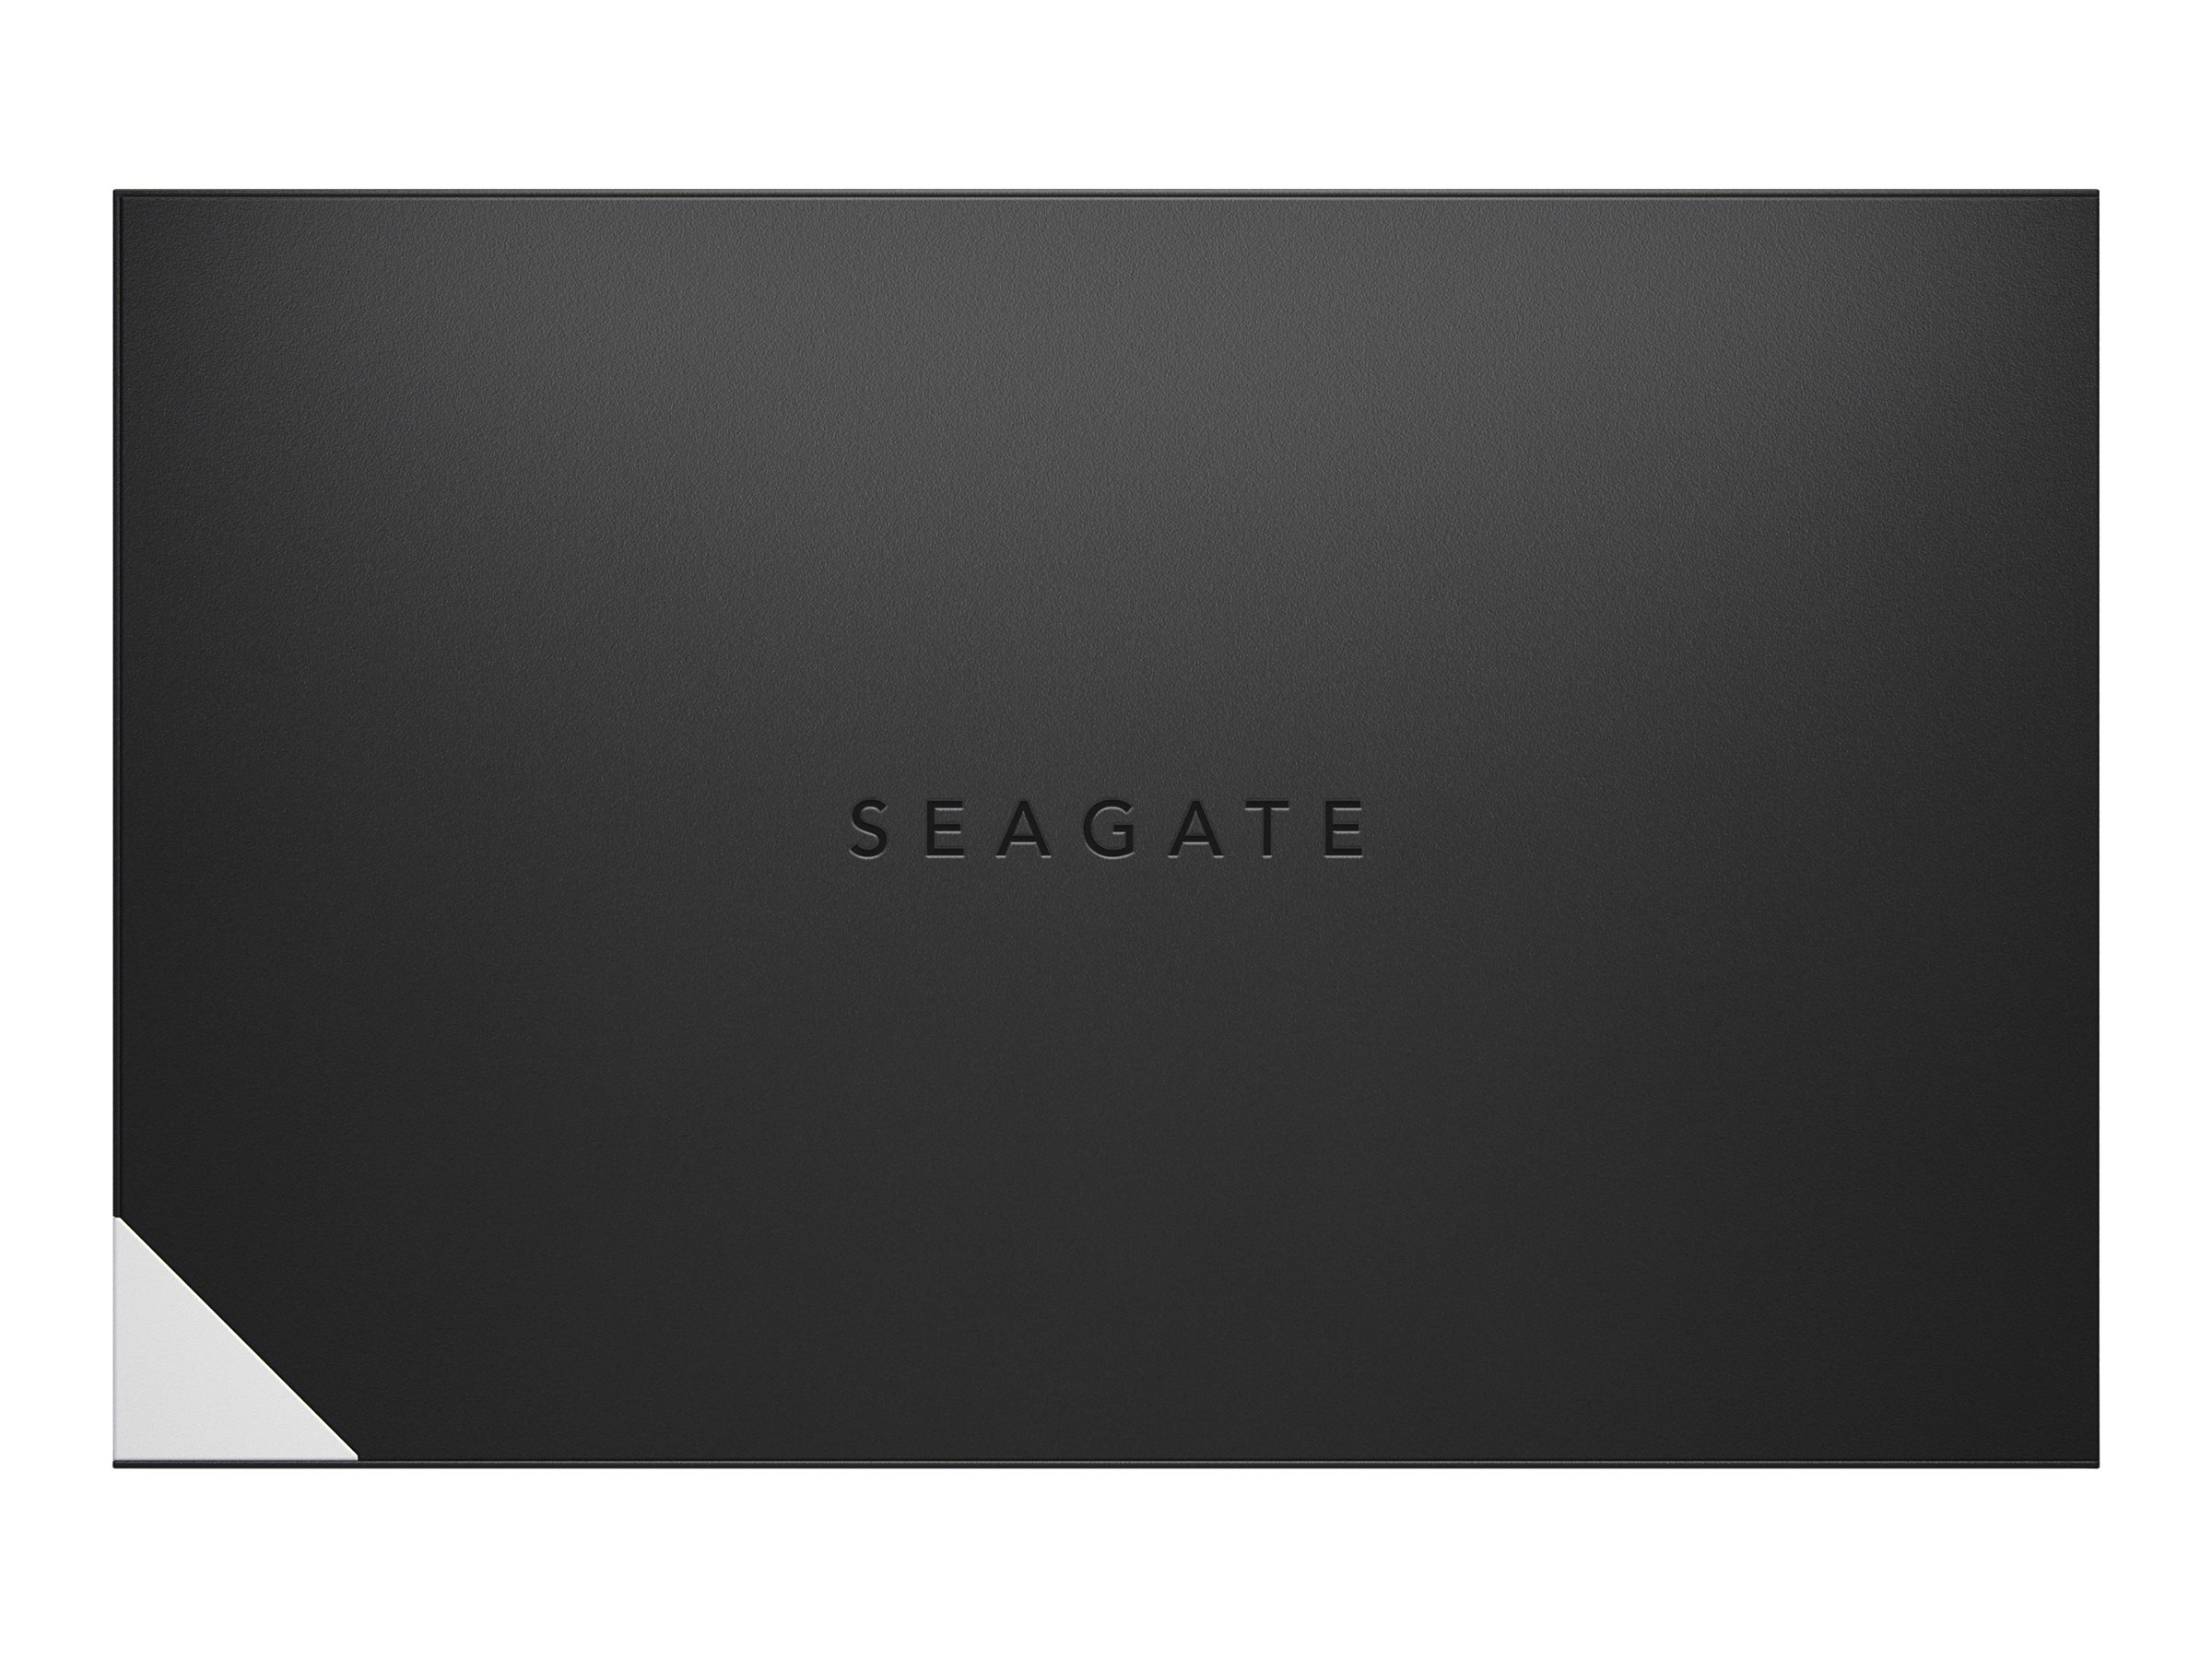 Seagate One Touch with hub STLC8000400 - Disque dur - 8 To - externe (de bureau) - USB 3.0 - noir - avec Seagate Rescue Data Recovery - STLC8000400 - Disques durs externes